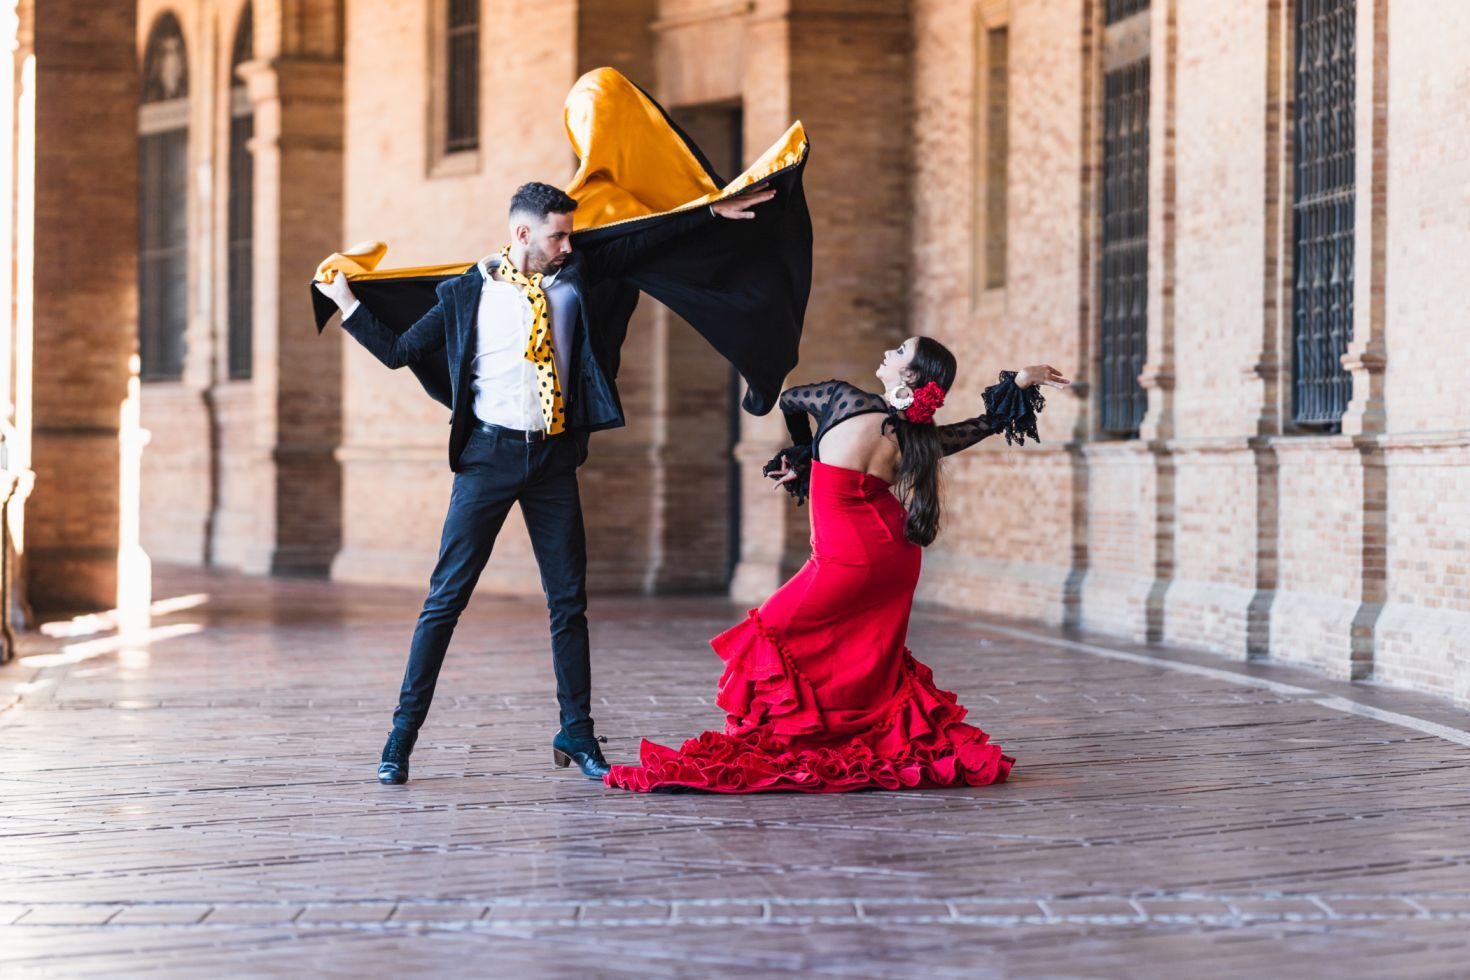 Mann und Frau im Flamenco-Kostüm, die einen Tanz im Freien aufführen